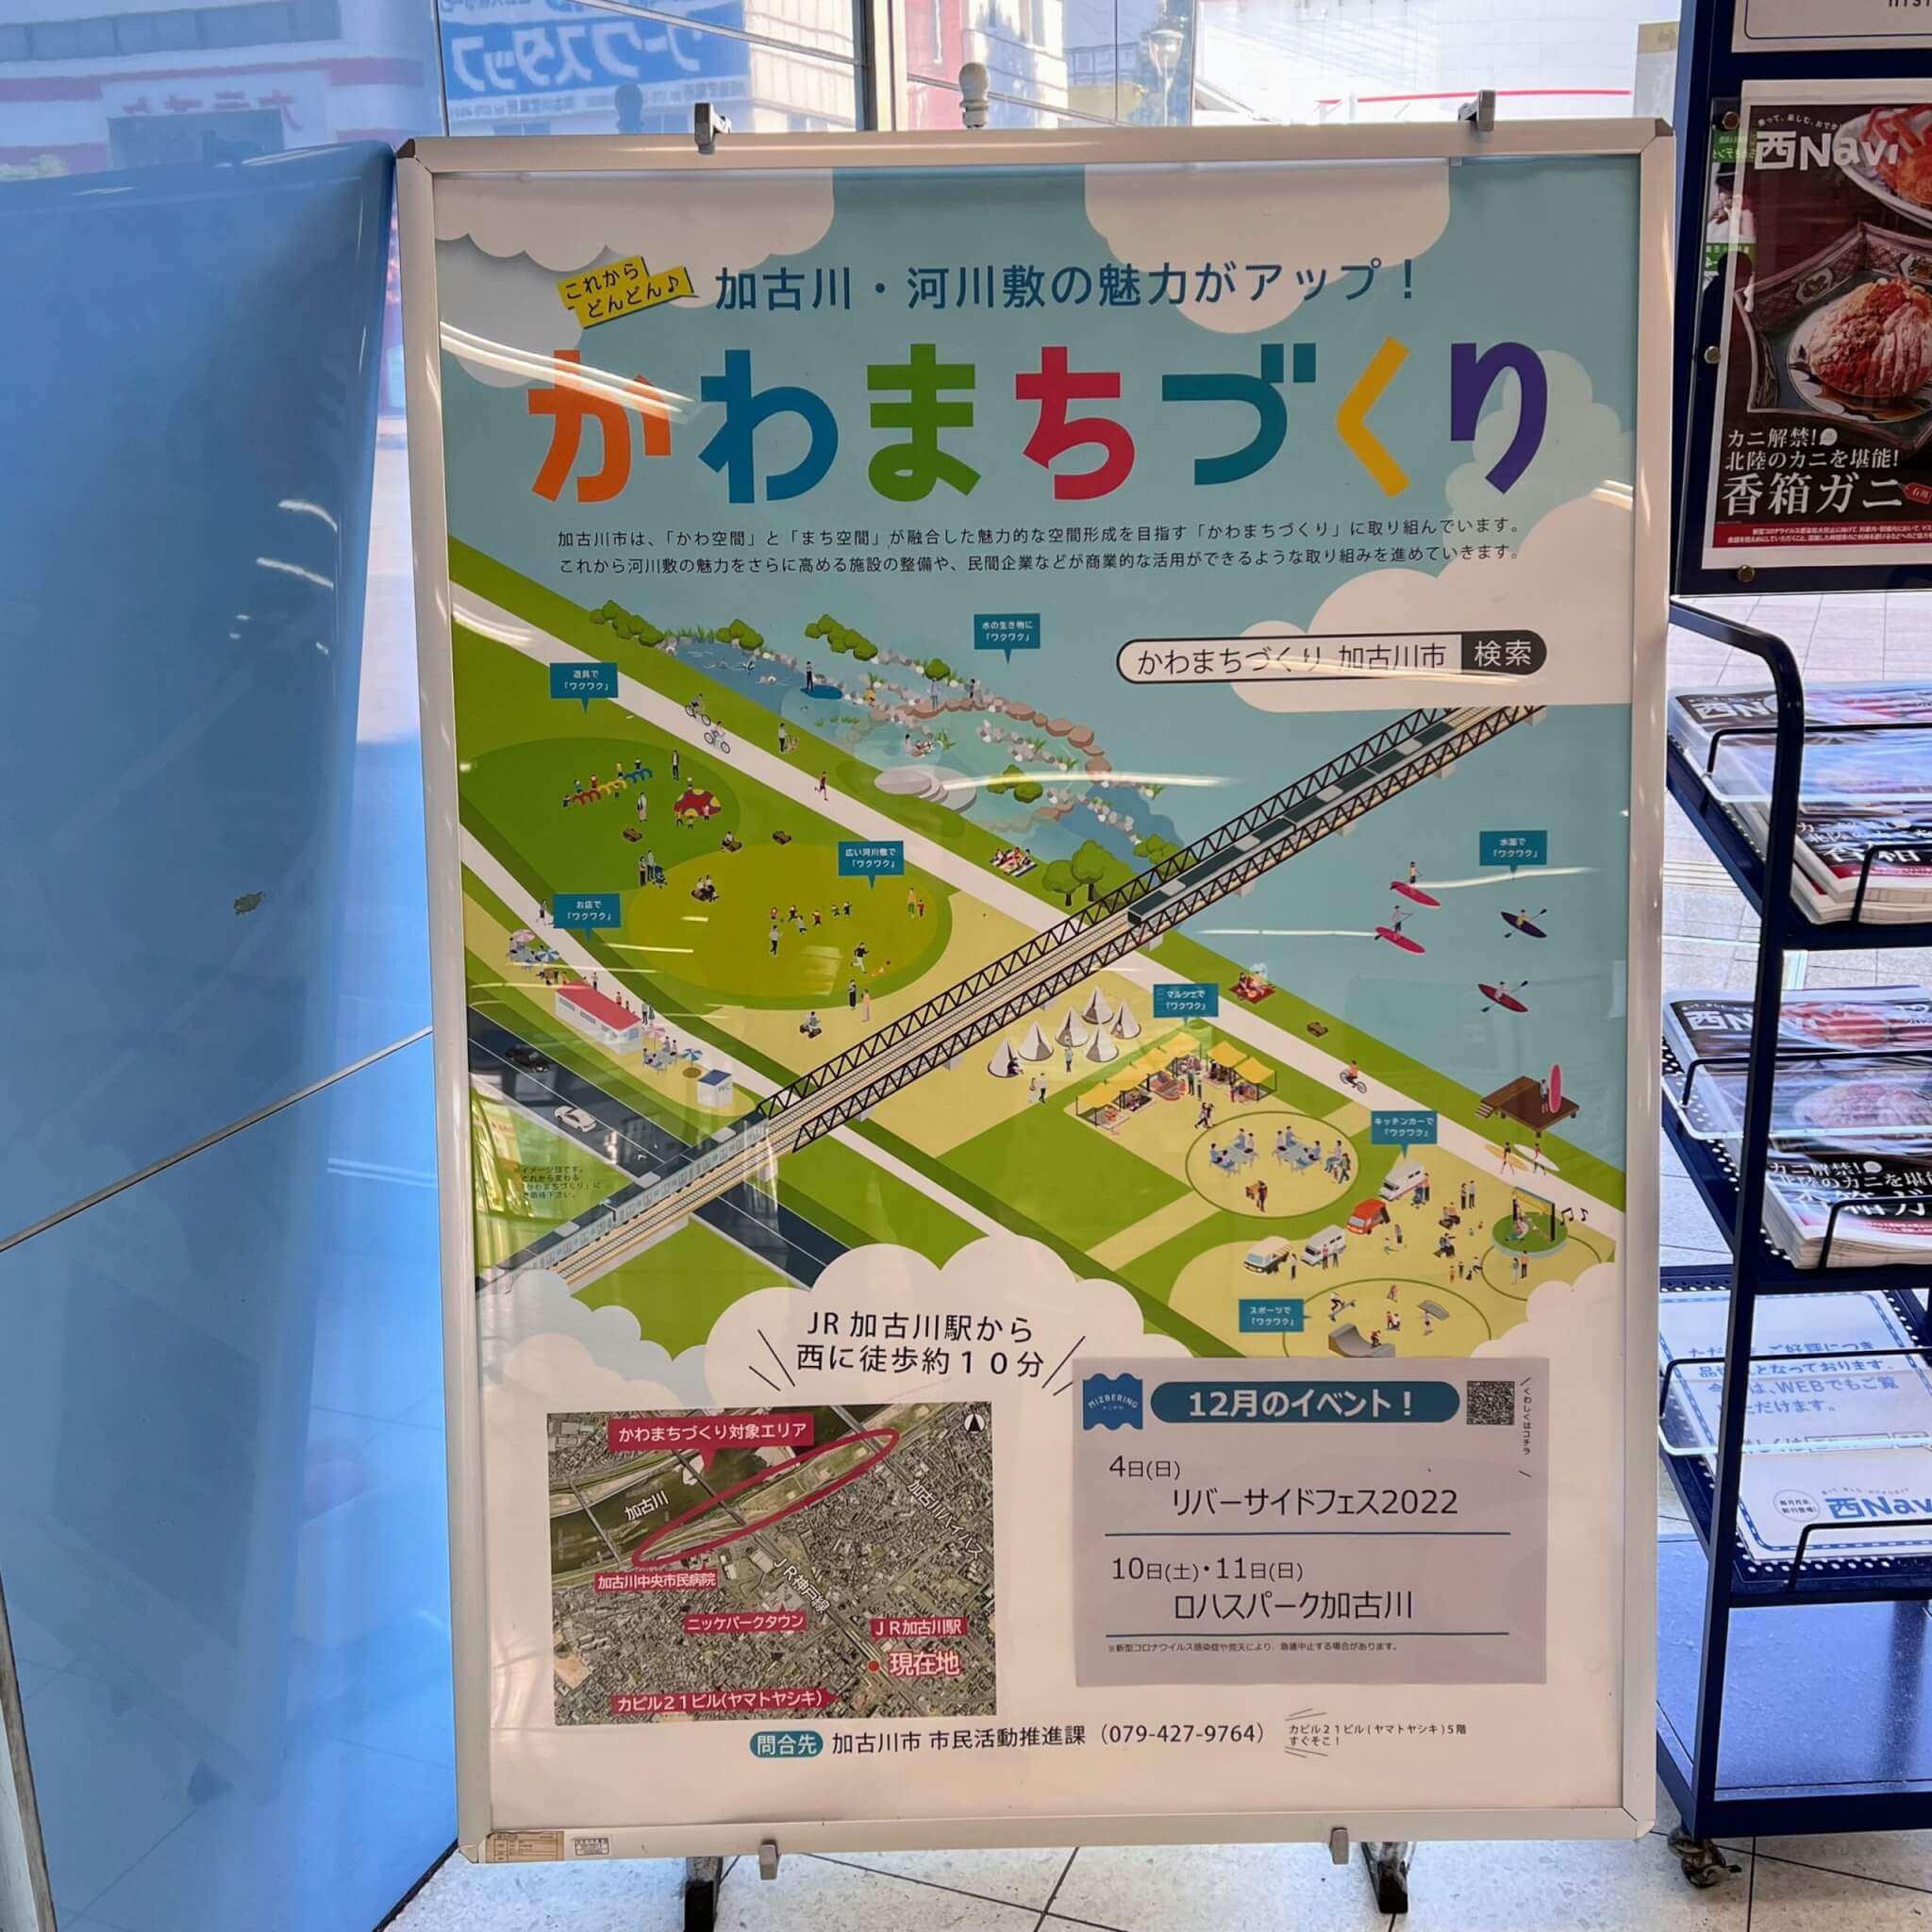 JR加古川駅に設置されたかわまちづくりの看板。2022年12月7日撮影